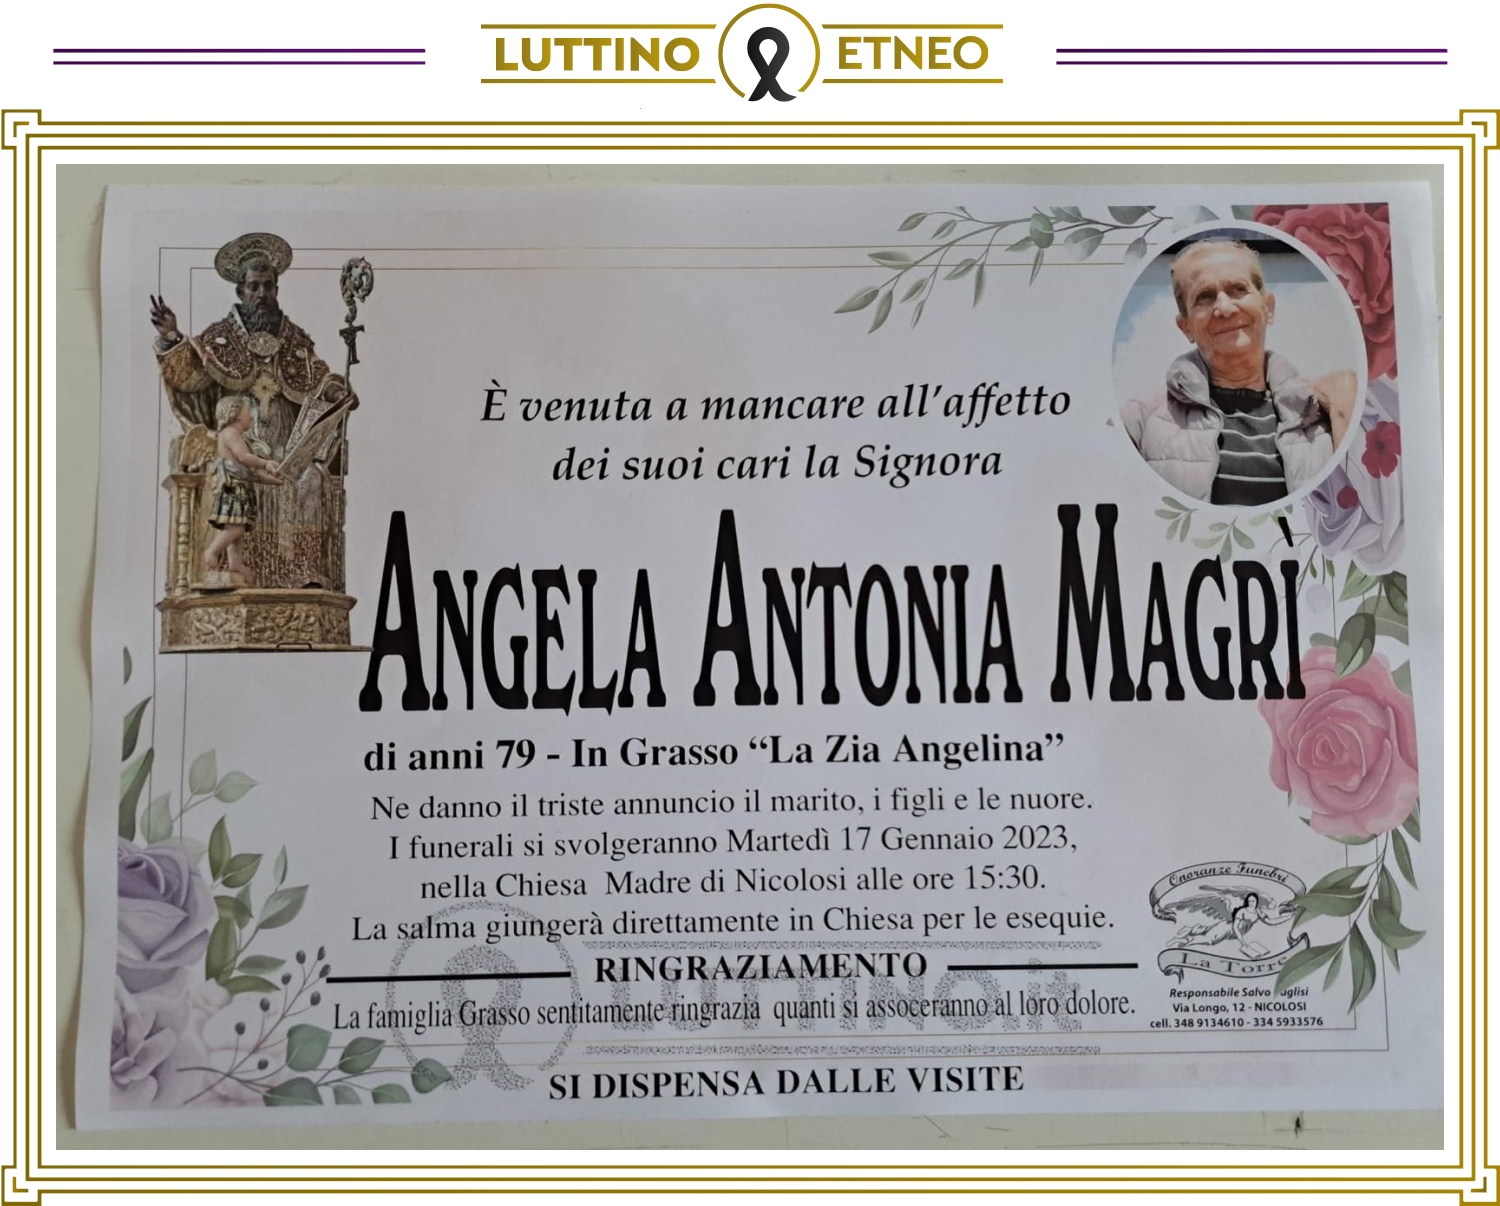 Angela Antonia Magrí